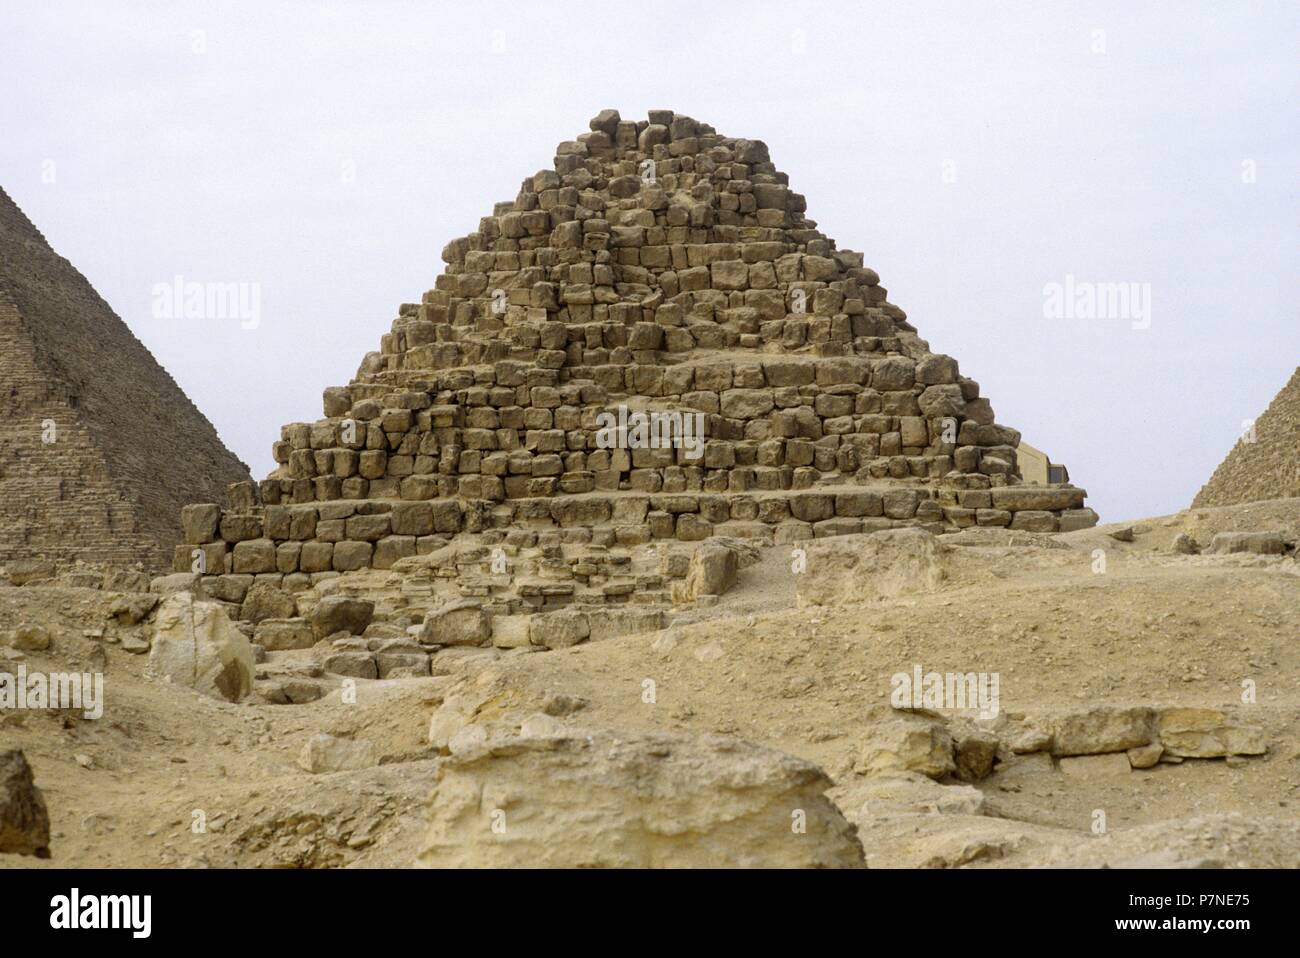 La pirámide de Micerino (nombre helenizado) o de Menkaura (según su nombre egipcio) es la menor de las tres célebres pirámides de la necrópolis de la meseta de Guiza. A Menkaura, faraón de la dinastía IV, se le atribuye ordenar construir esta pirámide. Stock Photo